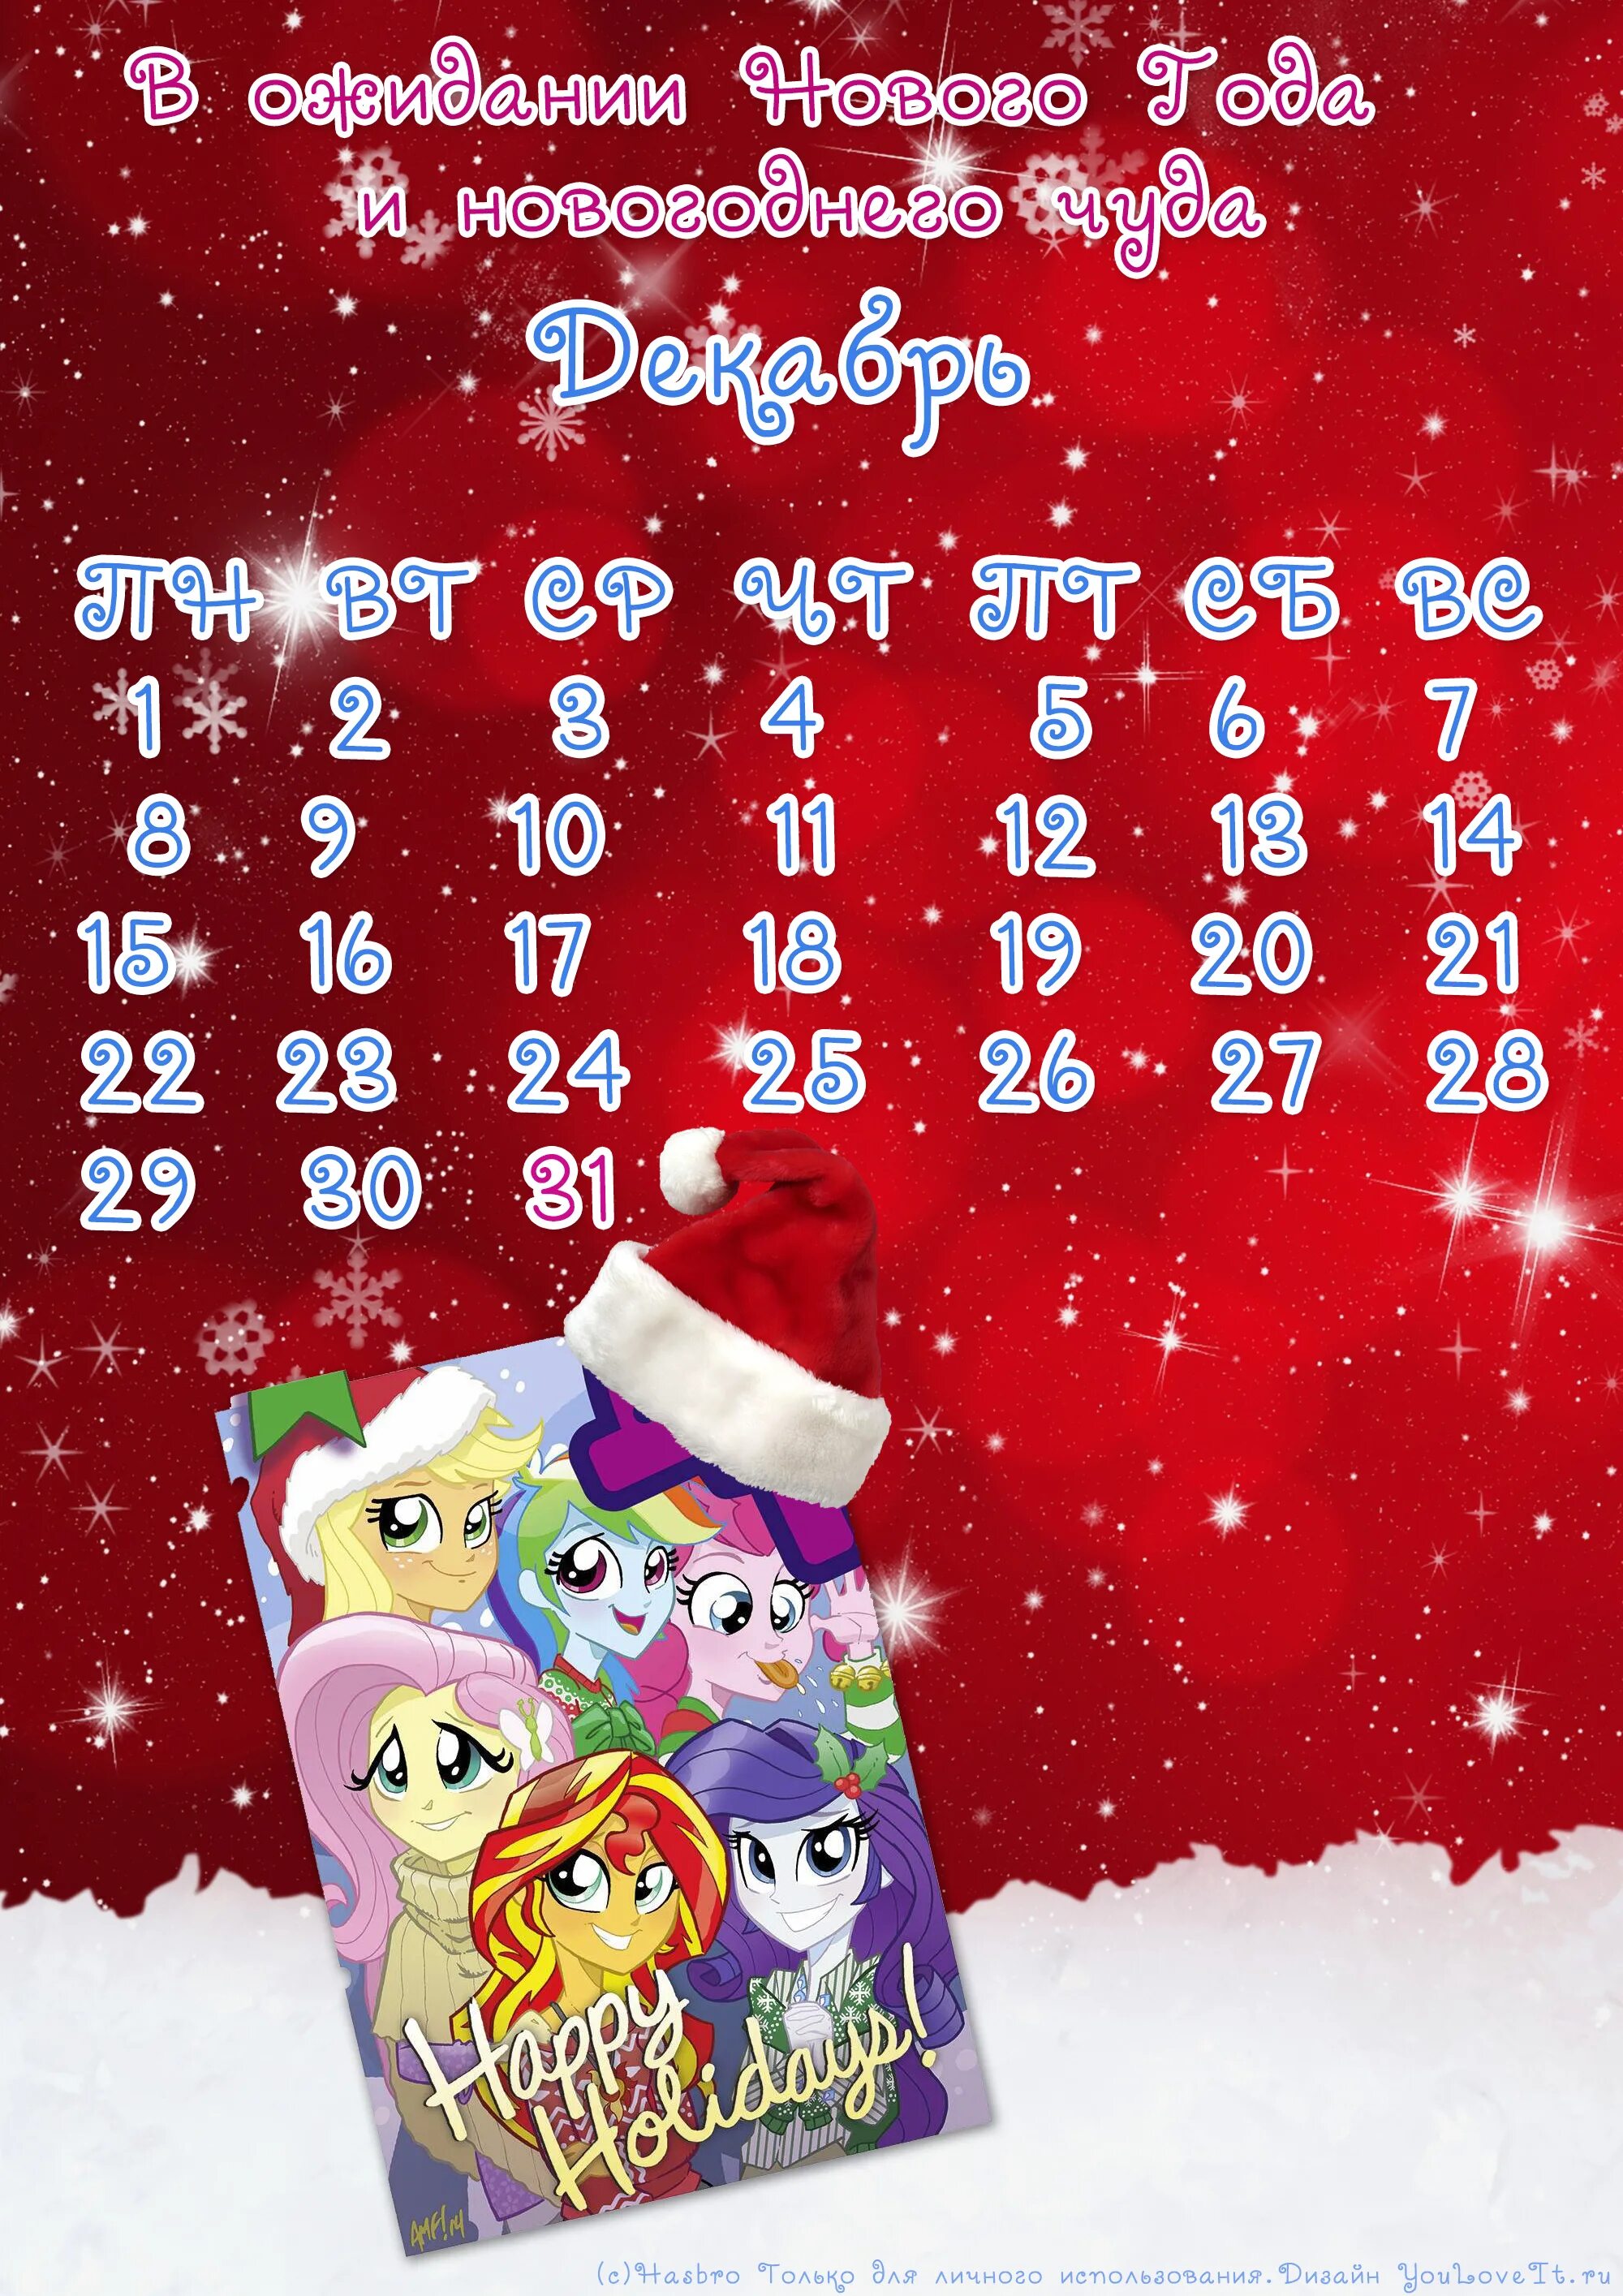 Календарь до нового года. Новогодний календарь до нового года. Новогодний календарик на декабрь. Детские календари до нового года.